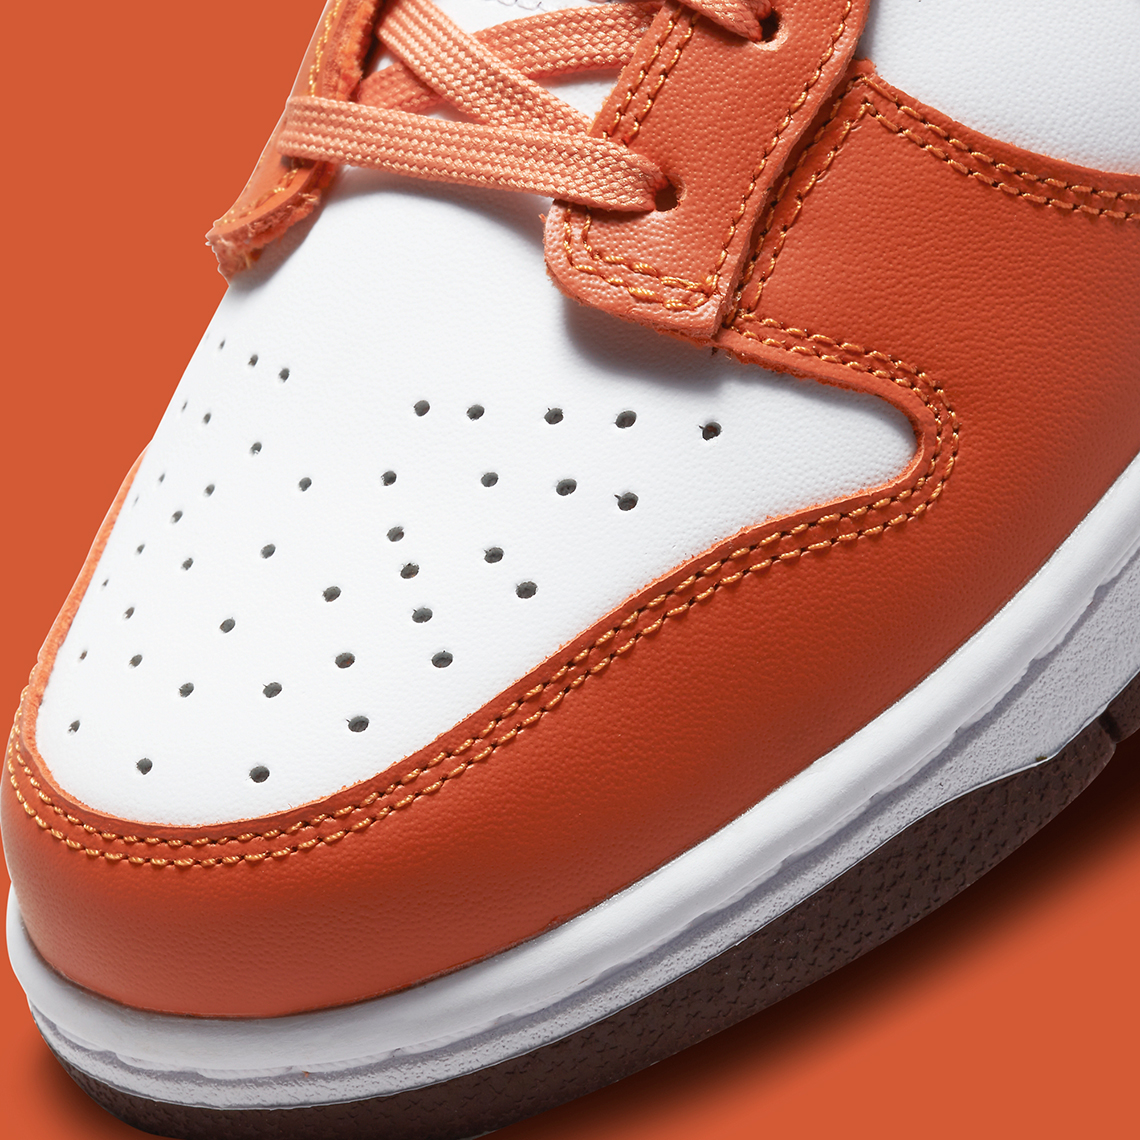 Nike Dunk Low Orange Brown Dq4697 800 5